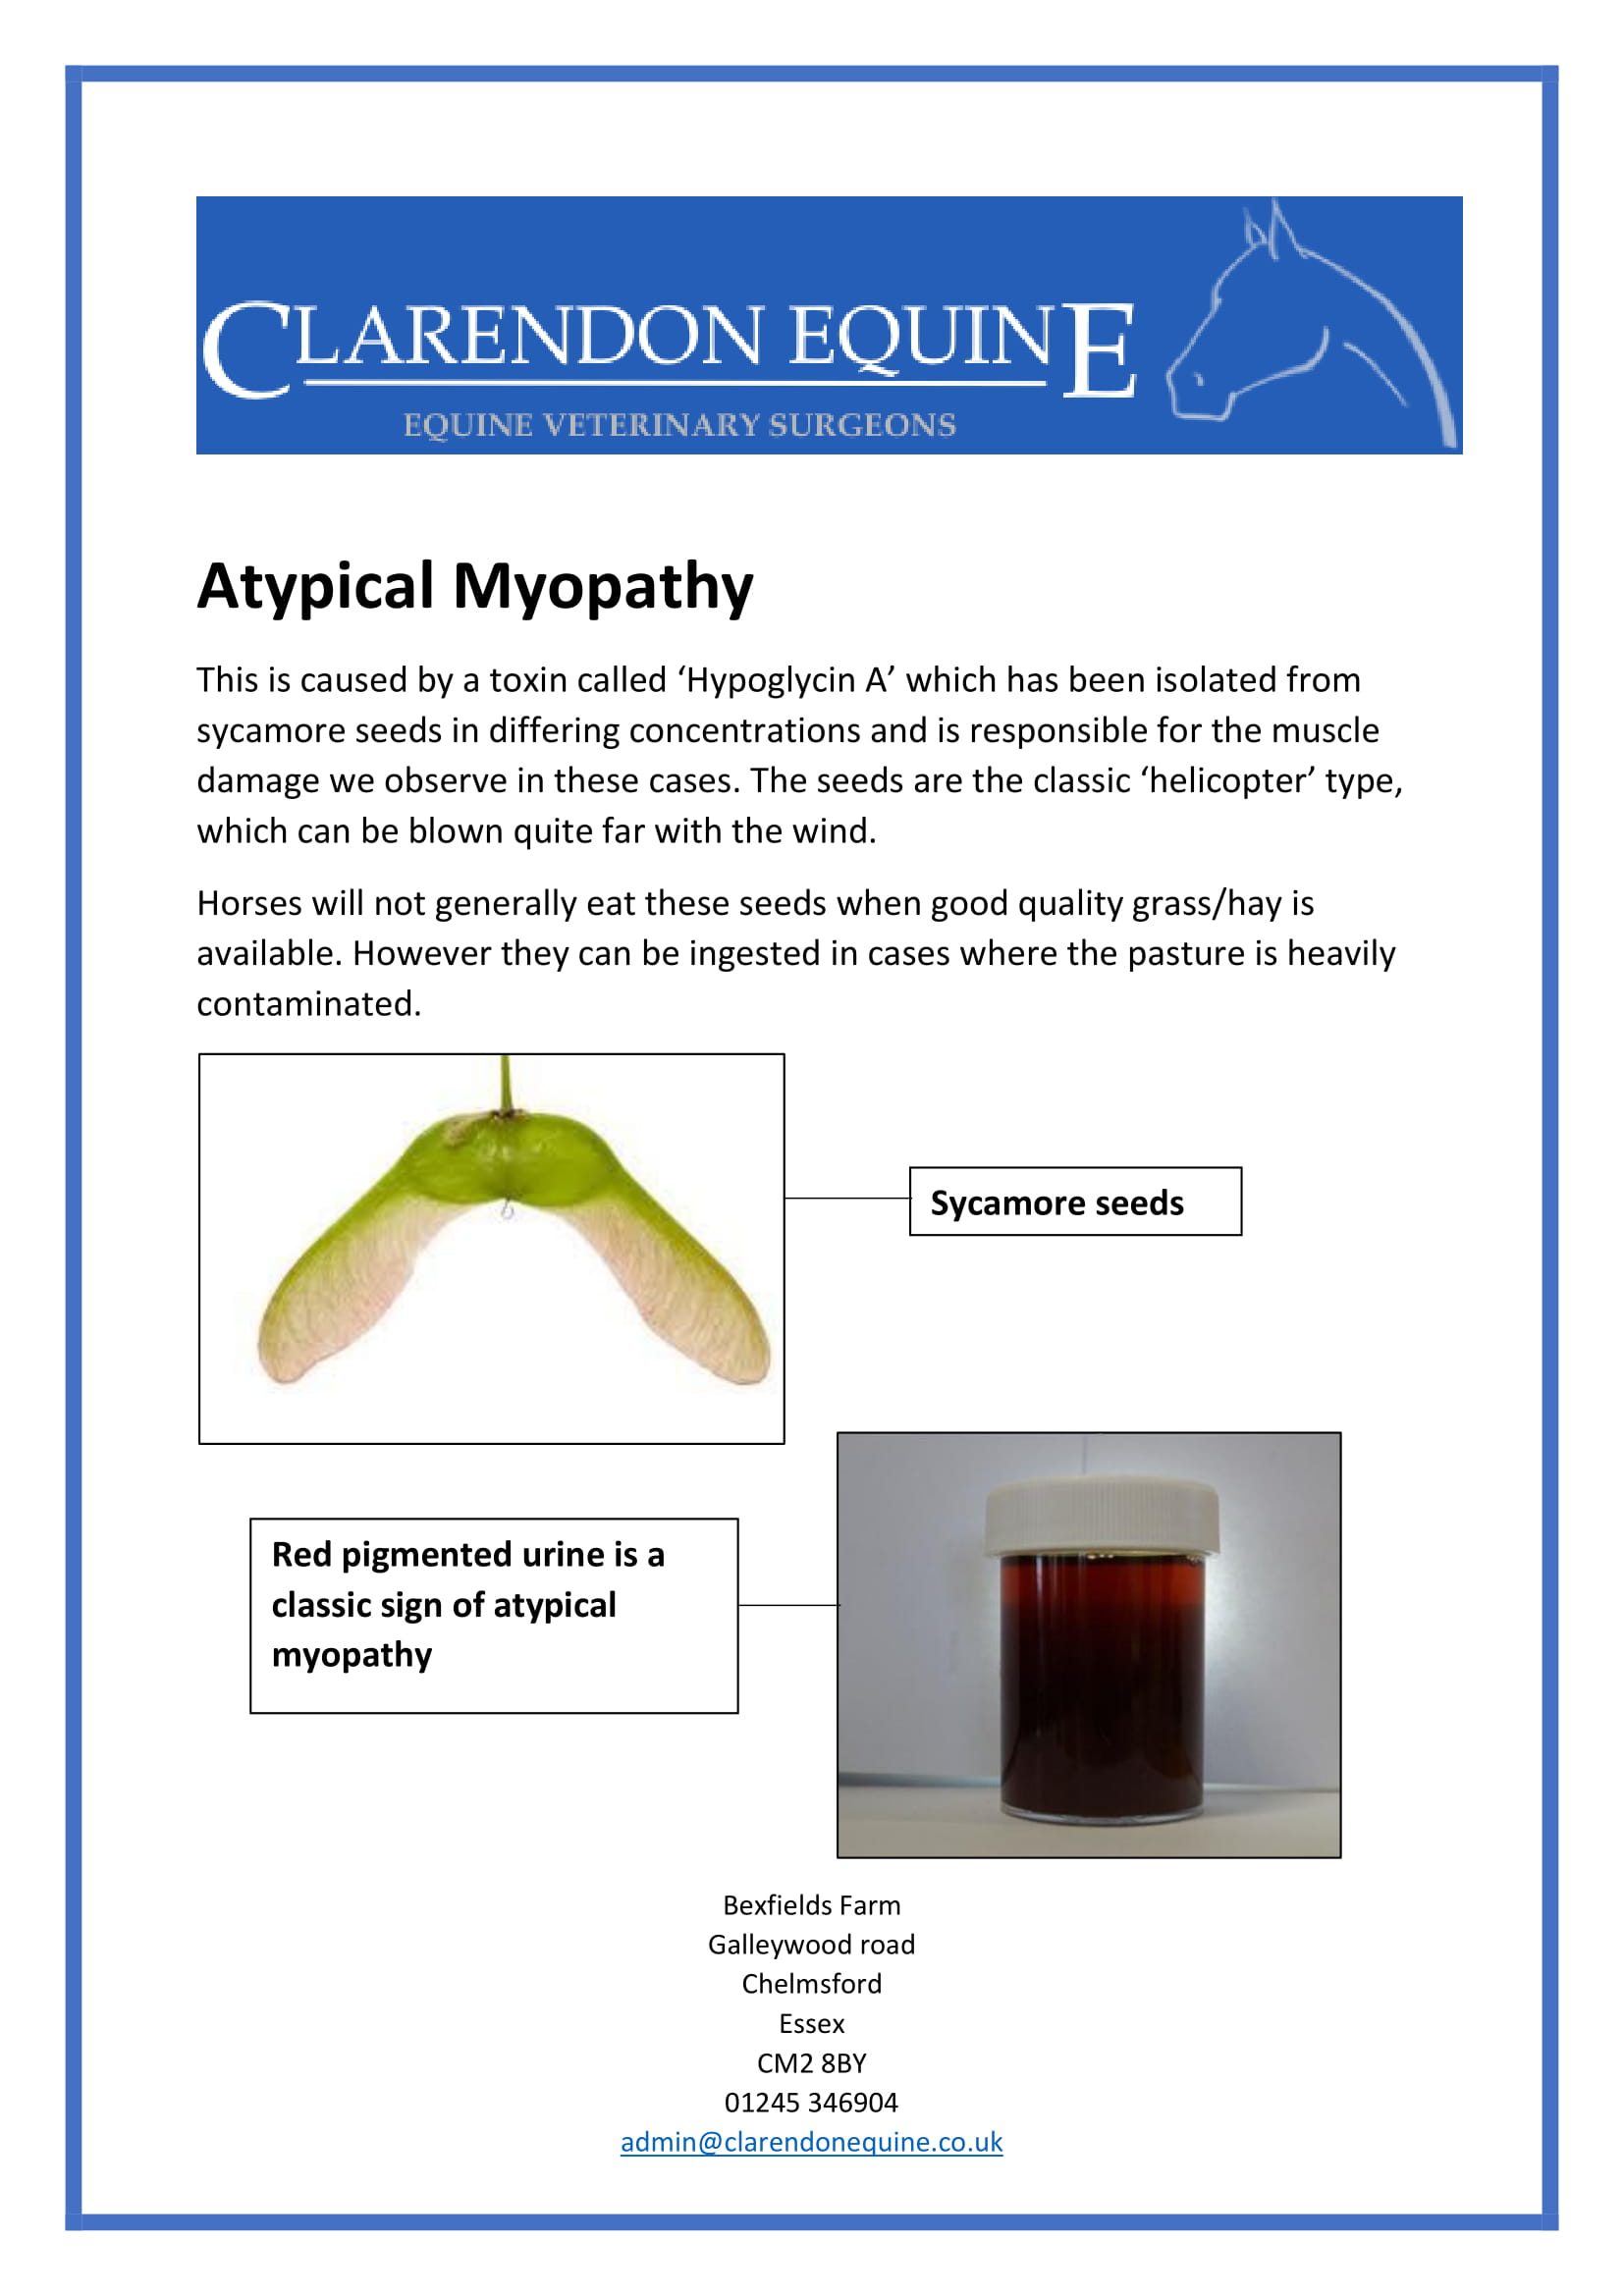 Atypical Myopathy Factsheet